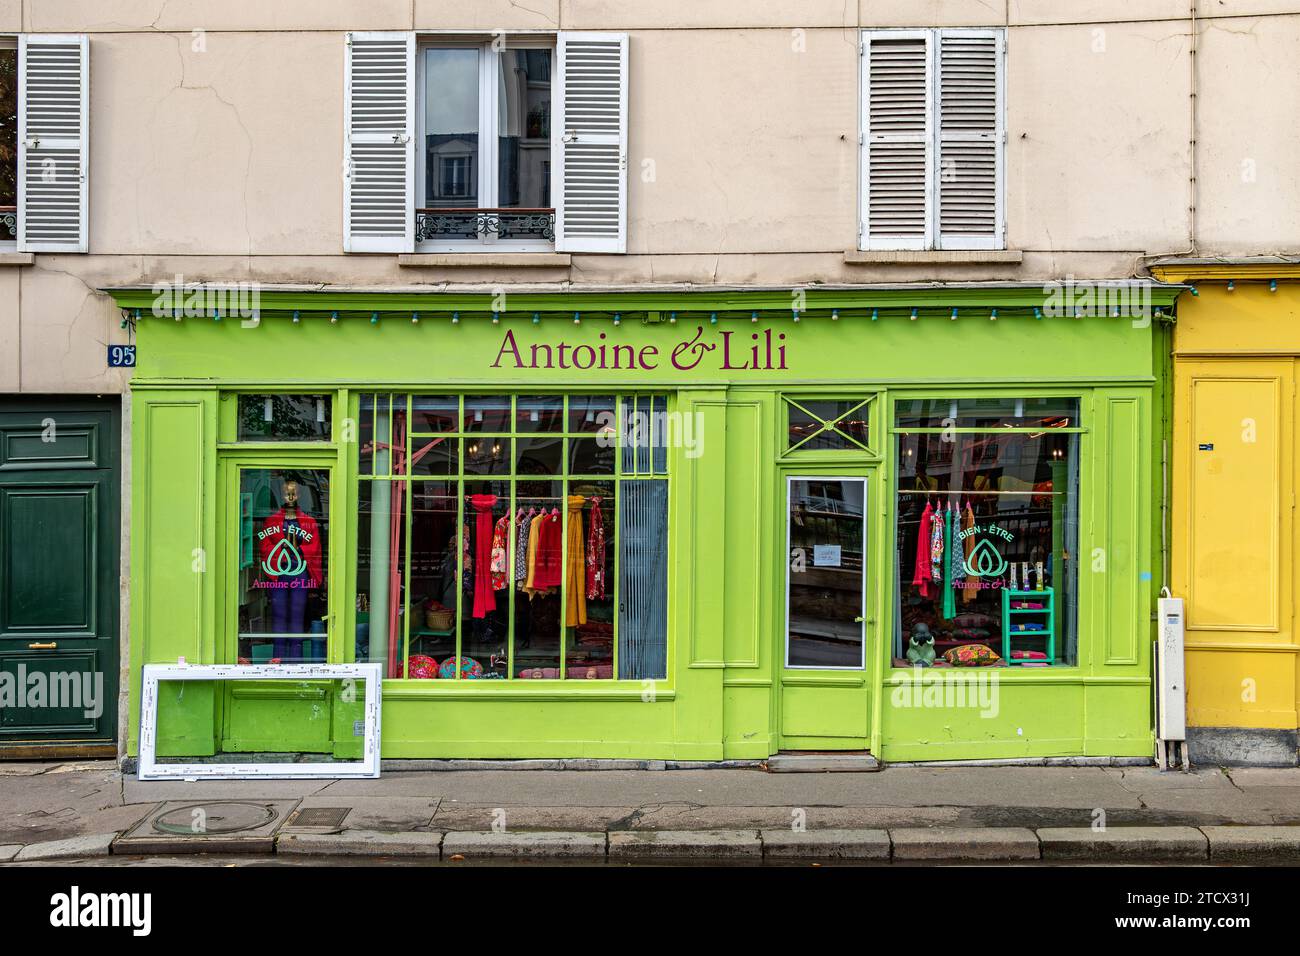 Antoine & Lili ein Damenkleidungsgeschäft in Paris, Frankreich am Quai de Valmy in der Nähe des Canal Saint-Martin im 10. Arrondissement von Paris, Frankreich Stockfoto